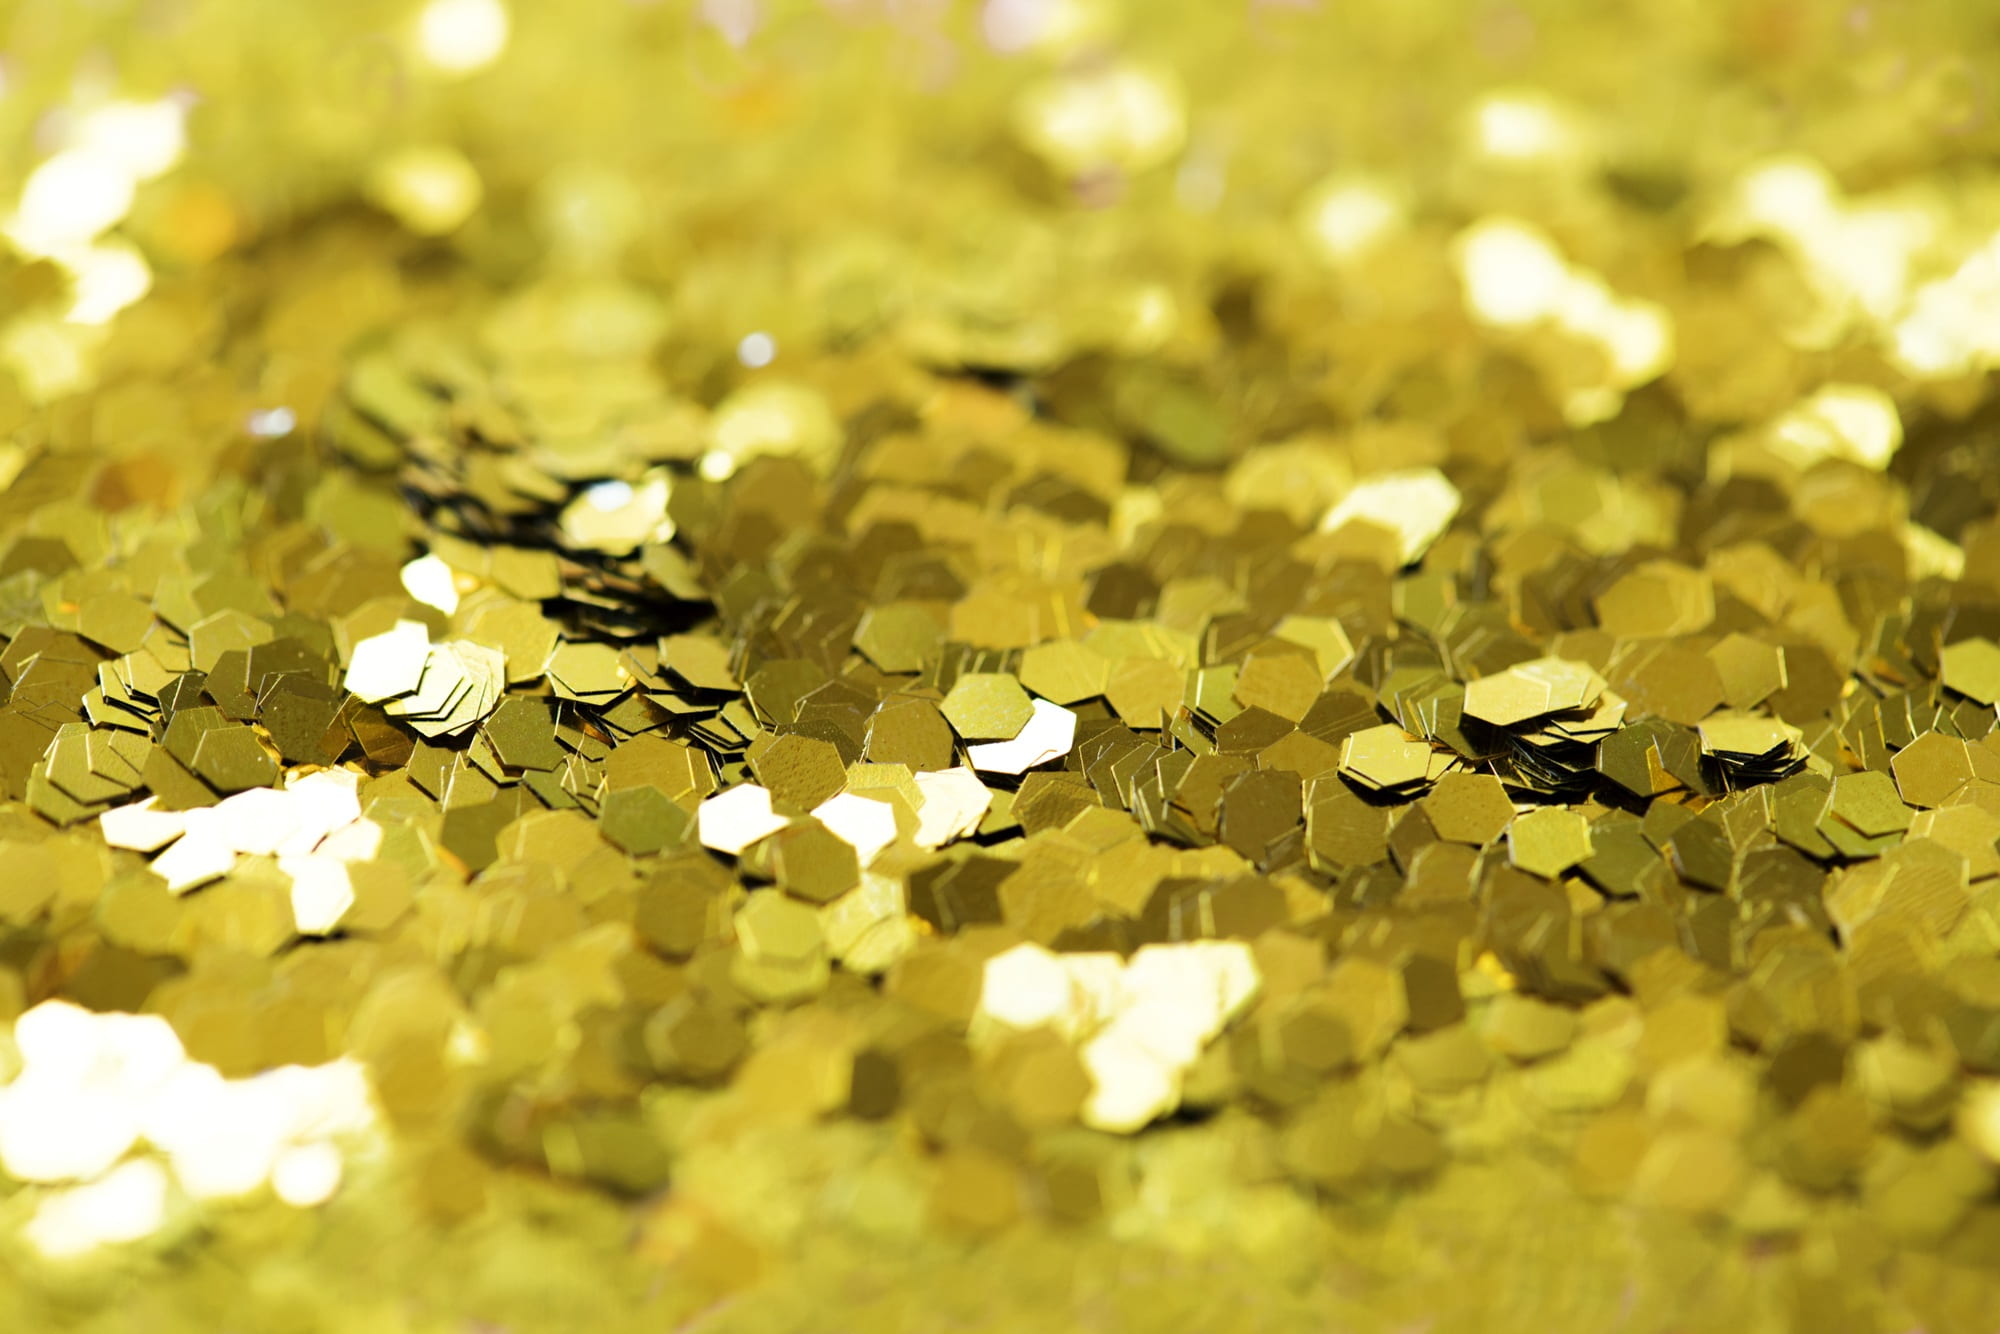 gold glitter lot, desktop, bright, blur, insubstantial, abstract